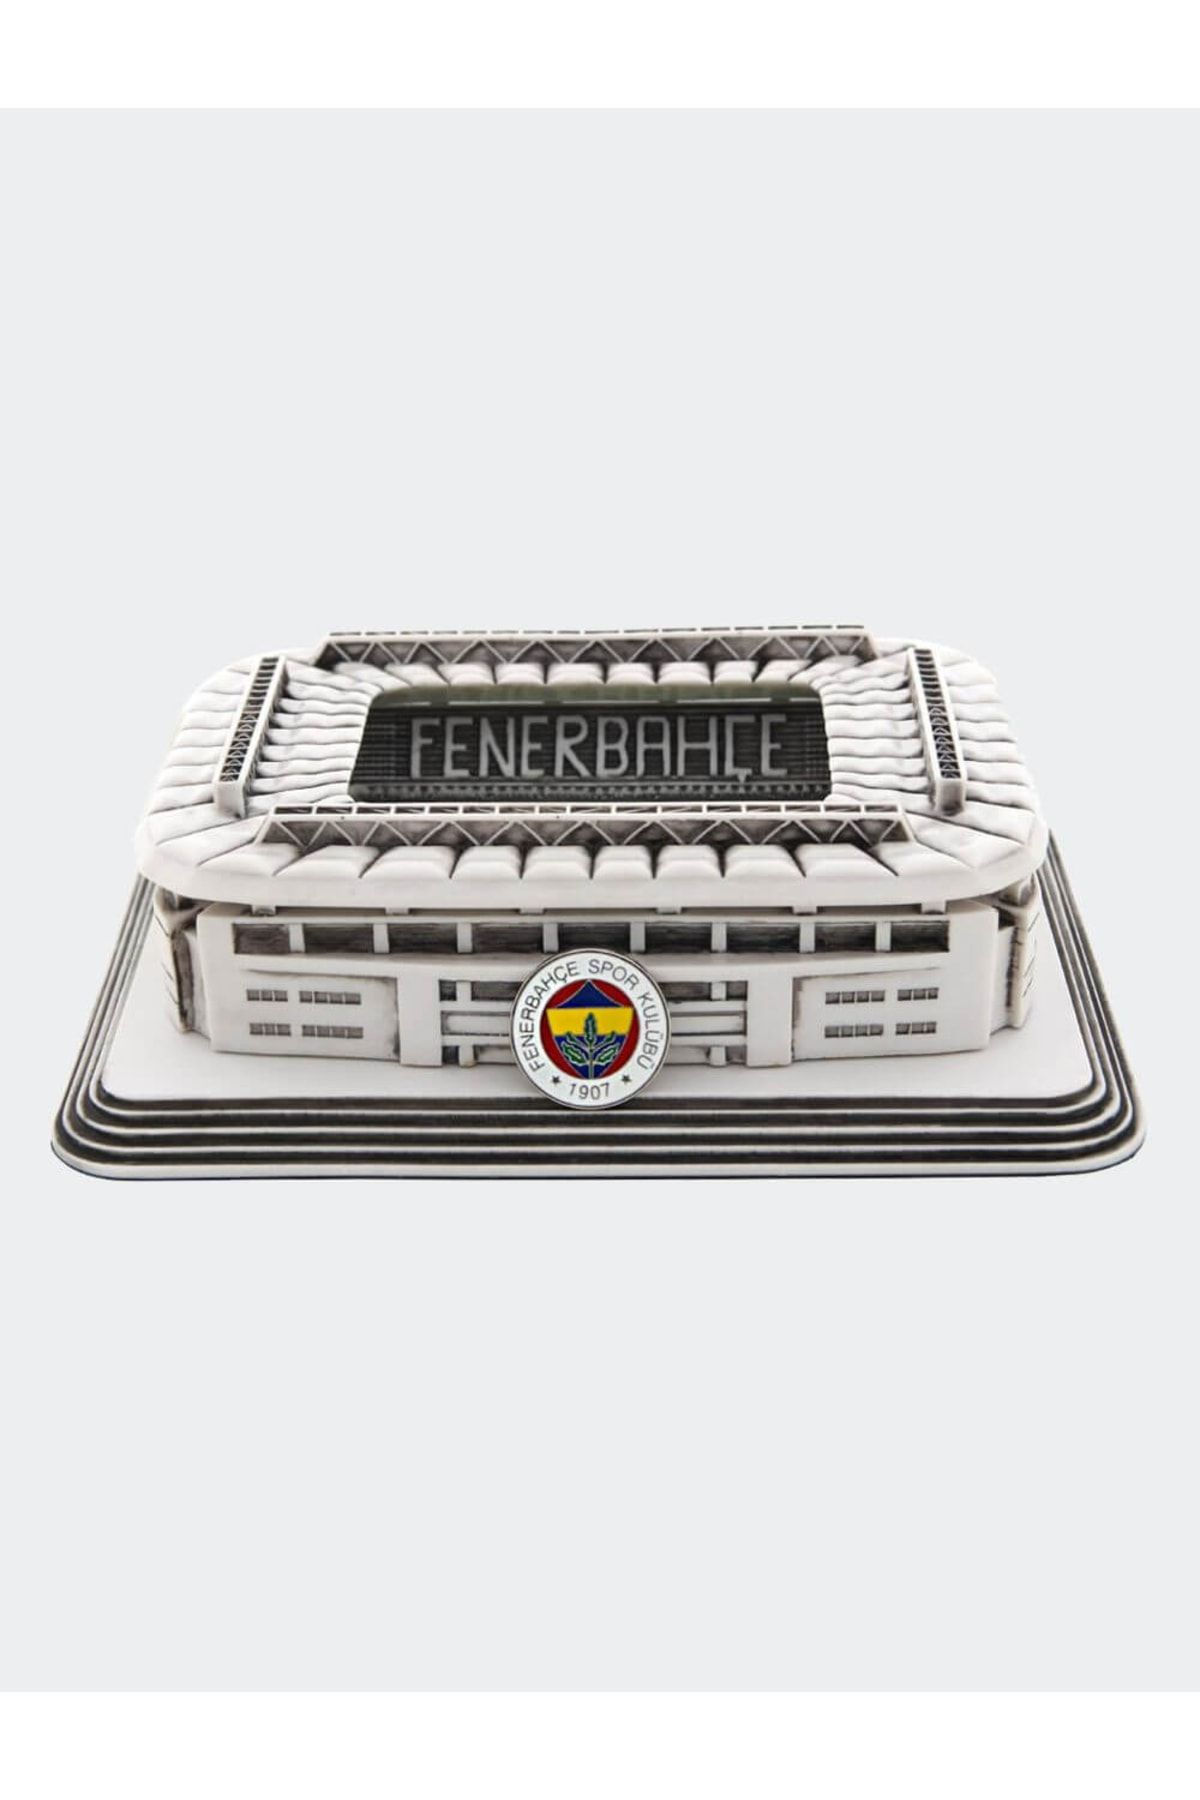 Fenerbahçe FENERBAHÇE STAD MAKETİ